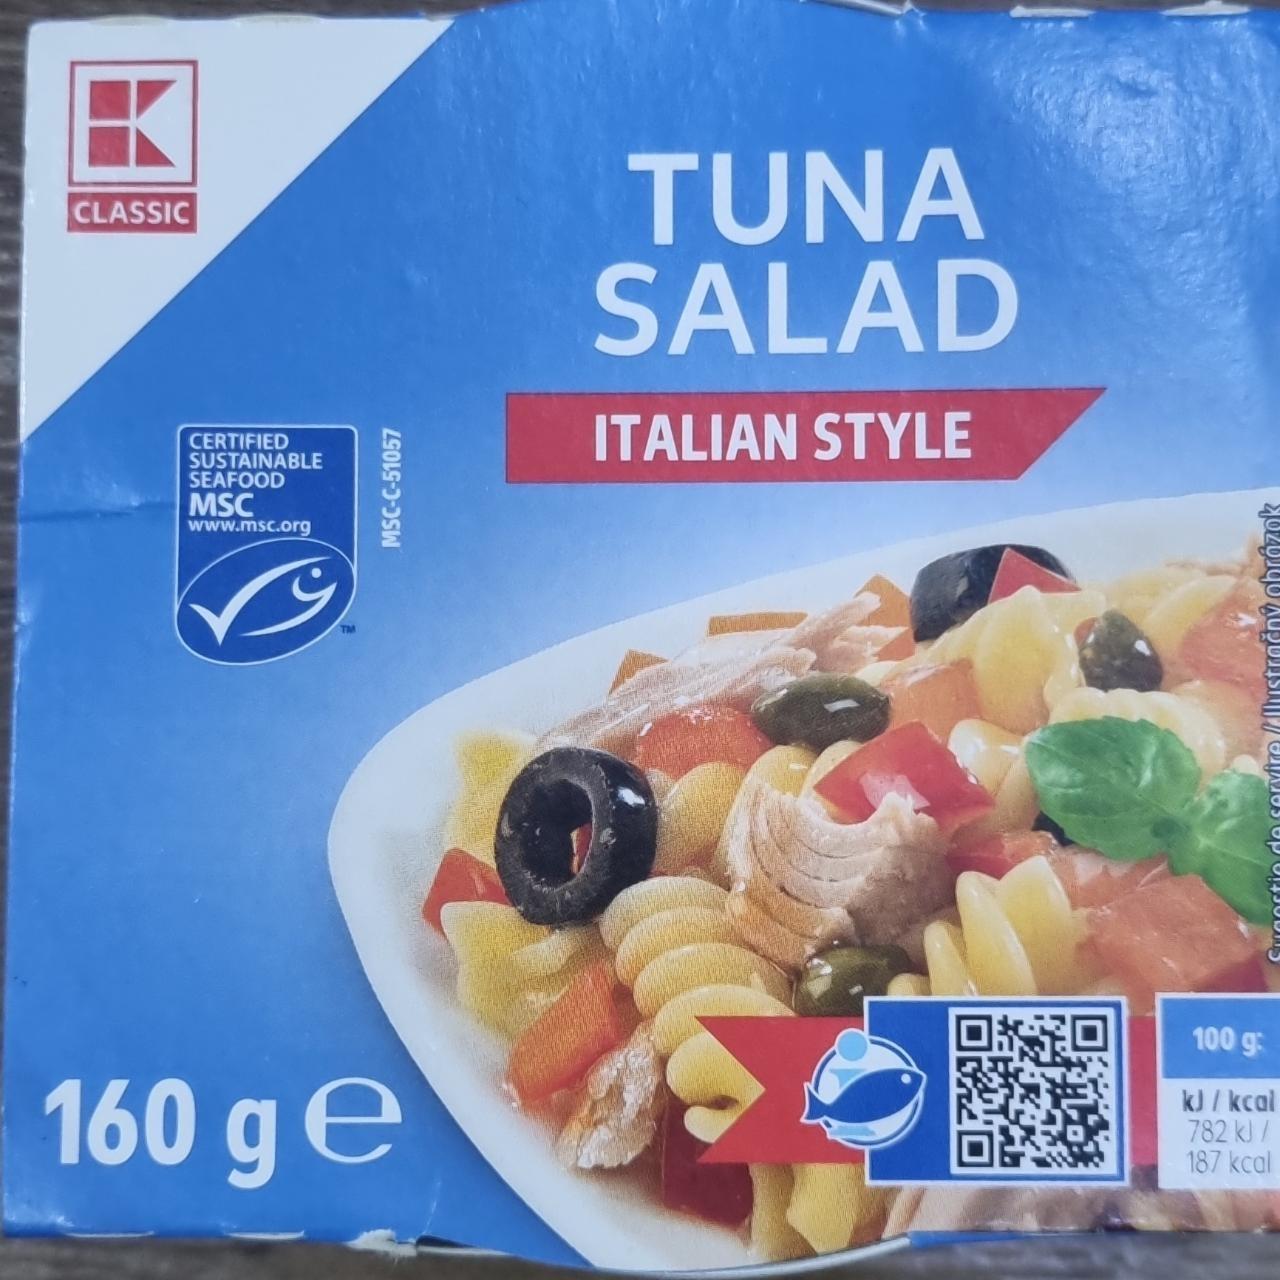 Képek - Tuna salad Italian style K-classic